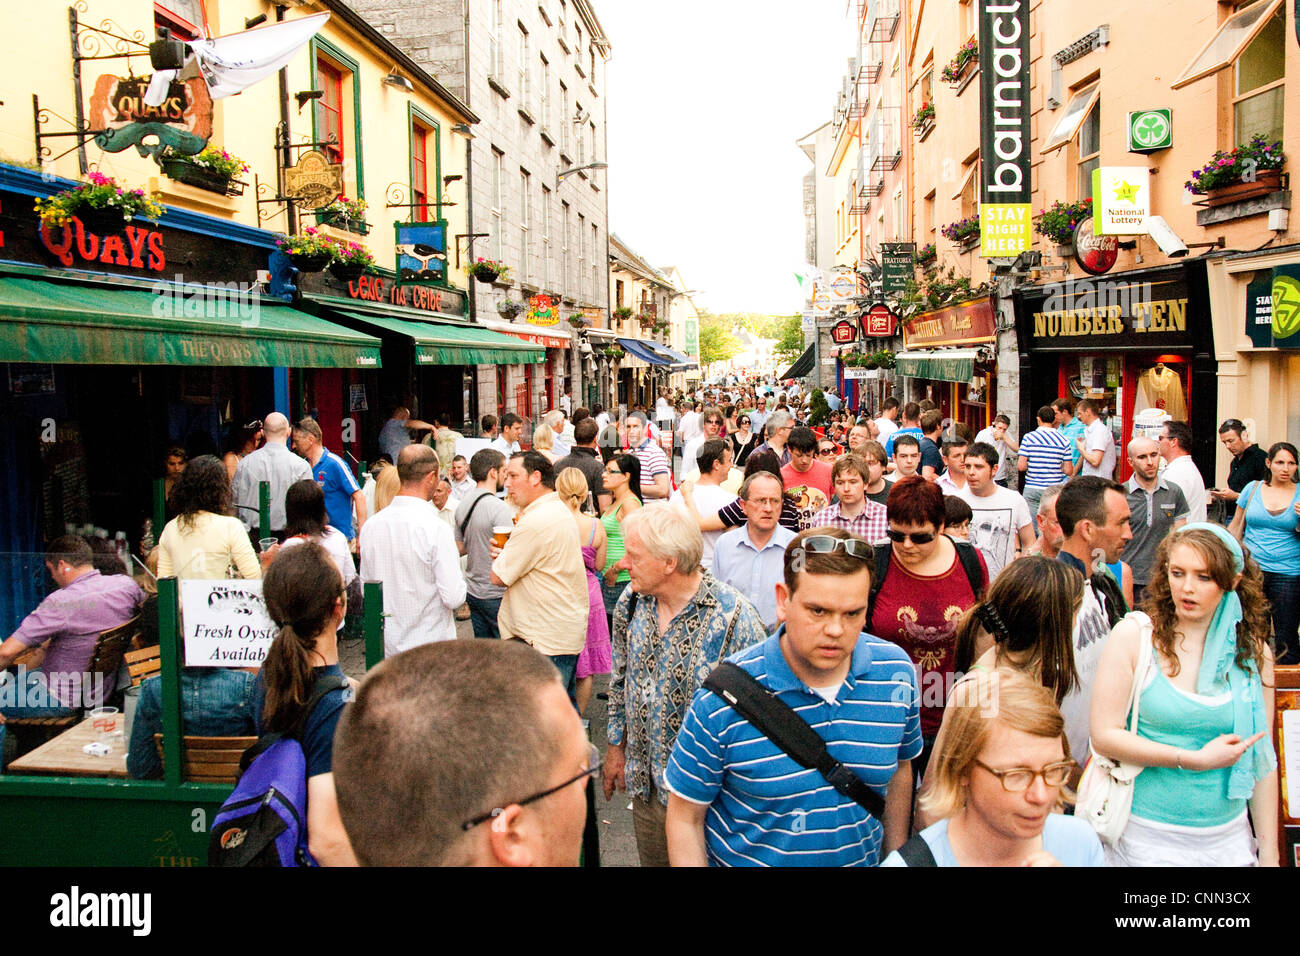 People Shopping on shop street, Galway Irlanda Foto Stock